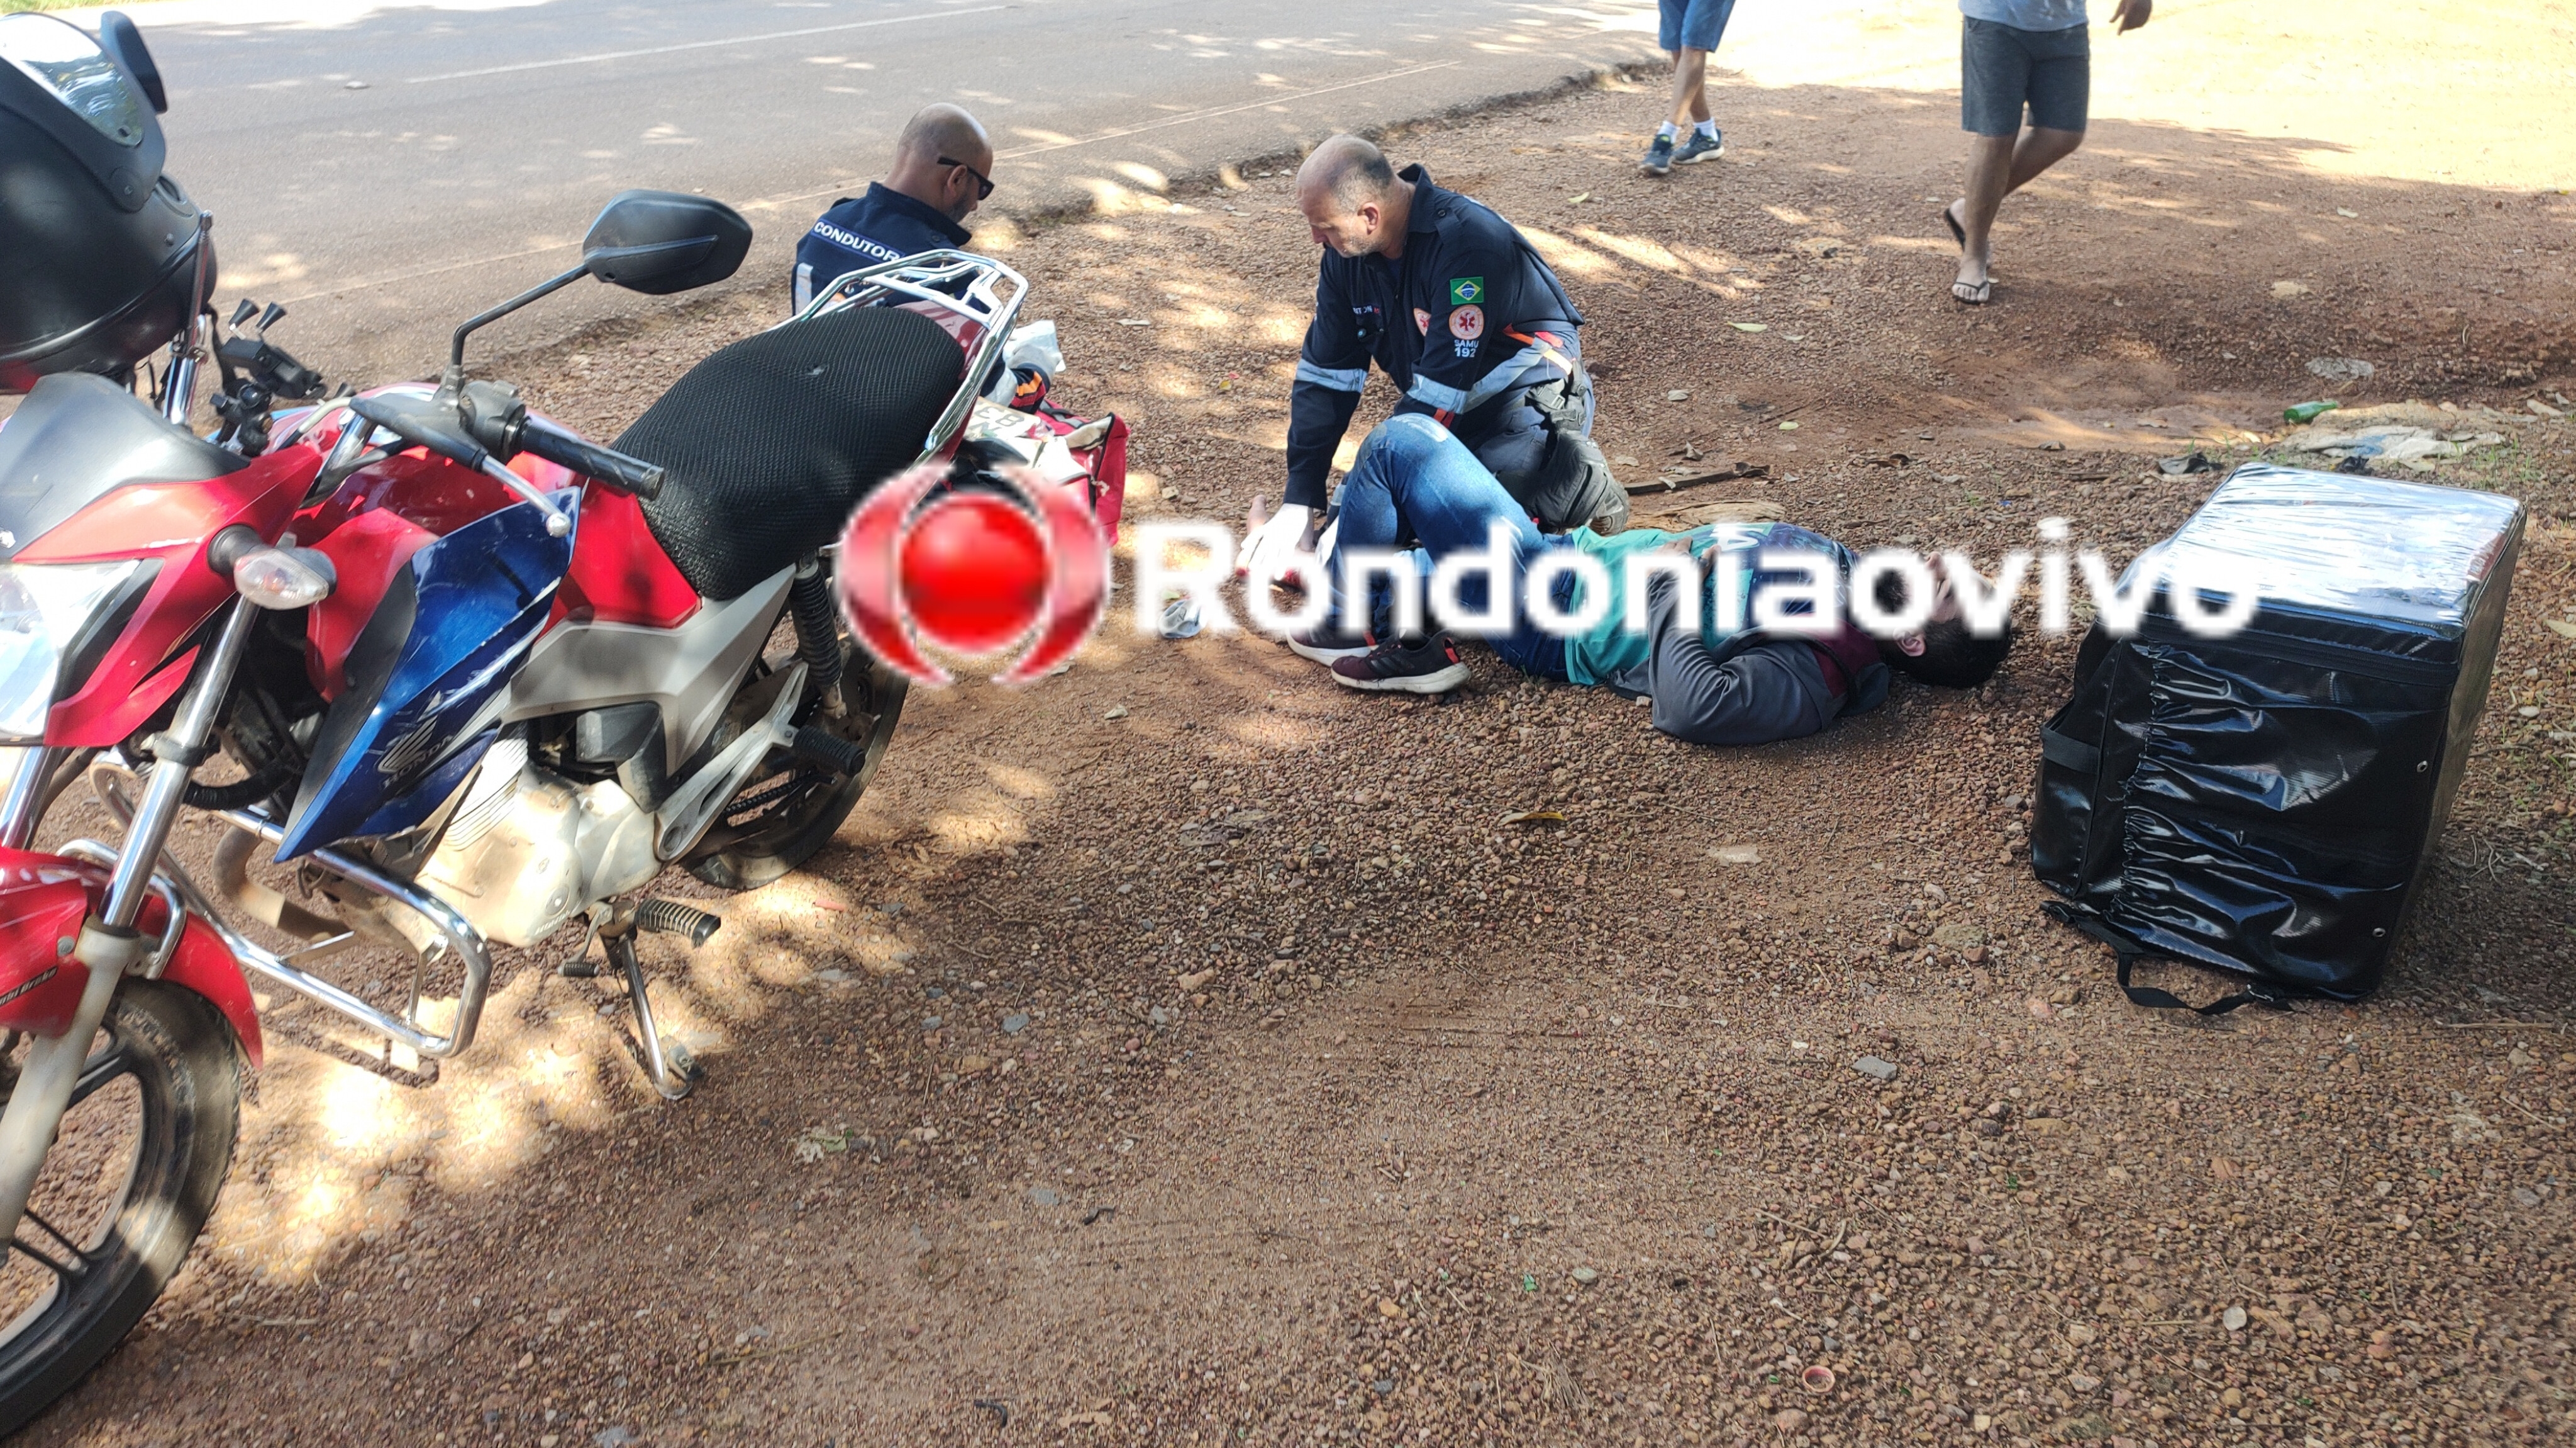 VÍDEO: Motoboy sofre grave lesão após cair em curva do viaduto 